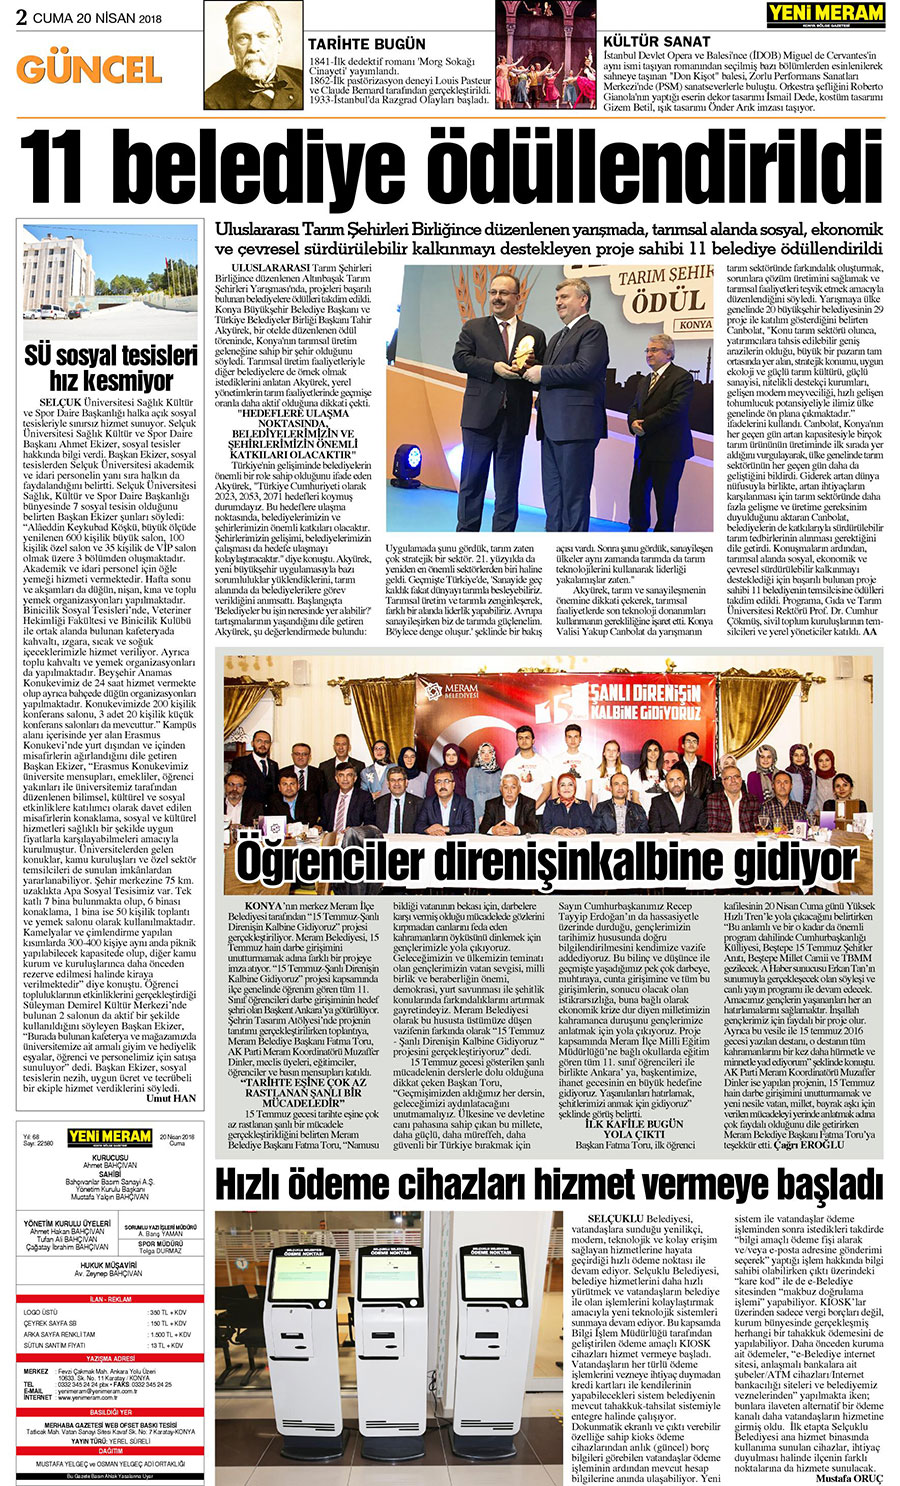 20 Nisan 2018 Yeni Meram Gazetesi